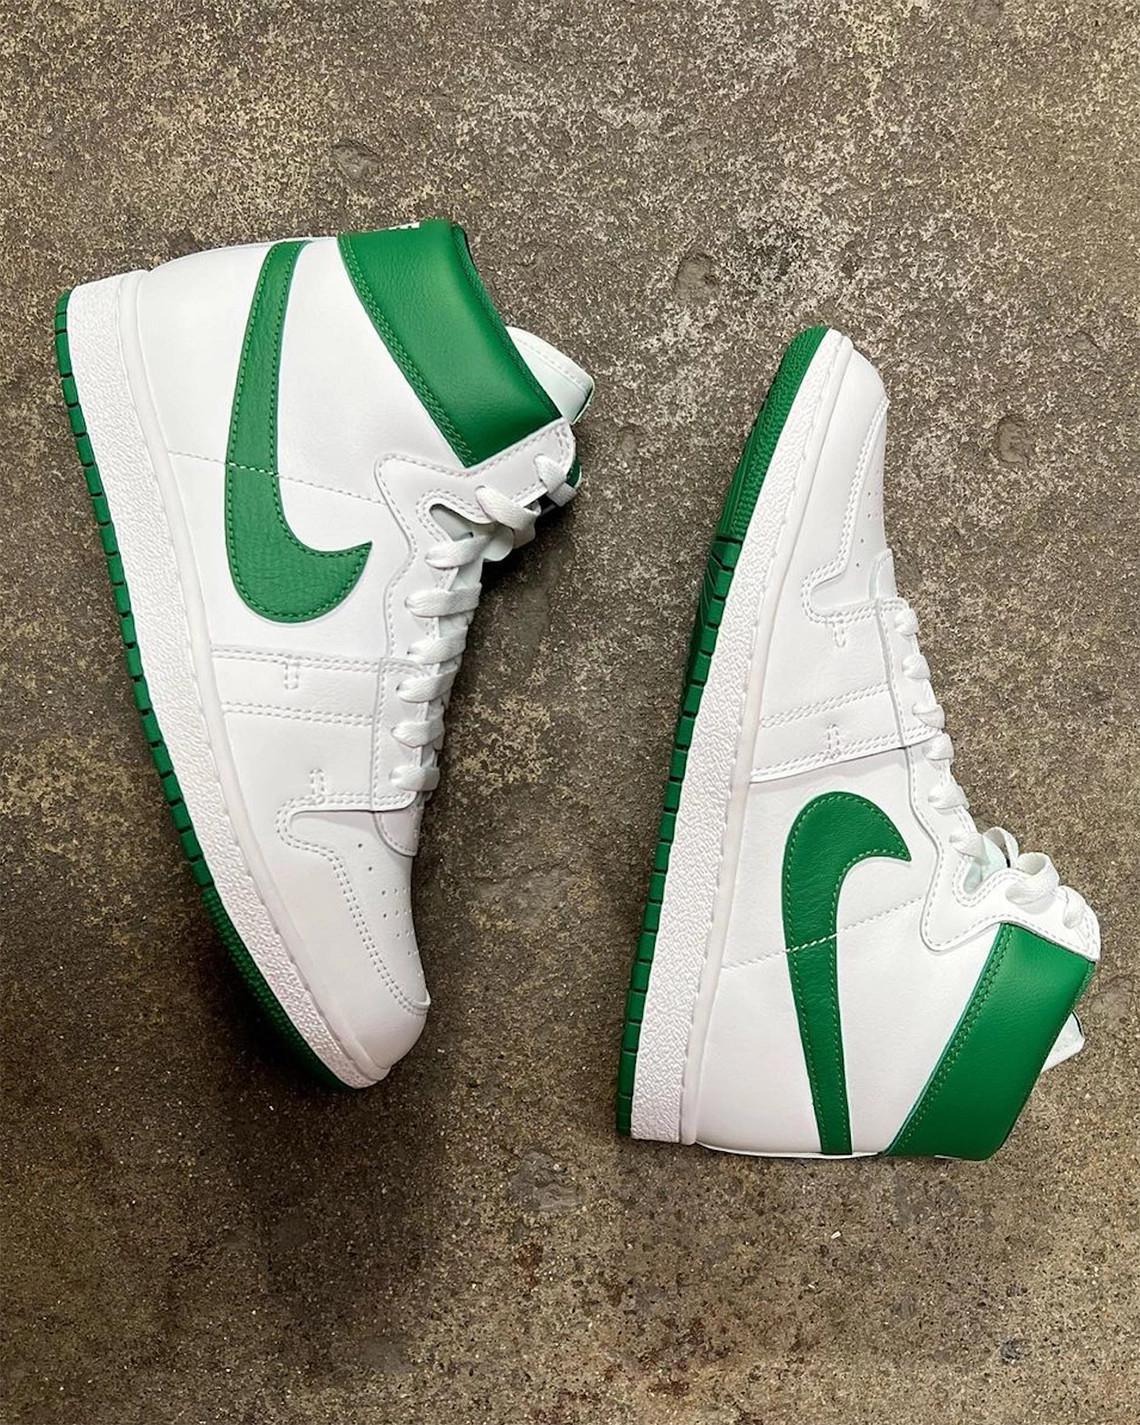 HIDDEN.NY partage des images de la prochaine Nike Air Ship "White/Green".